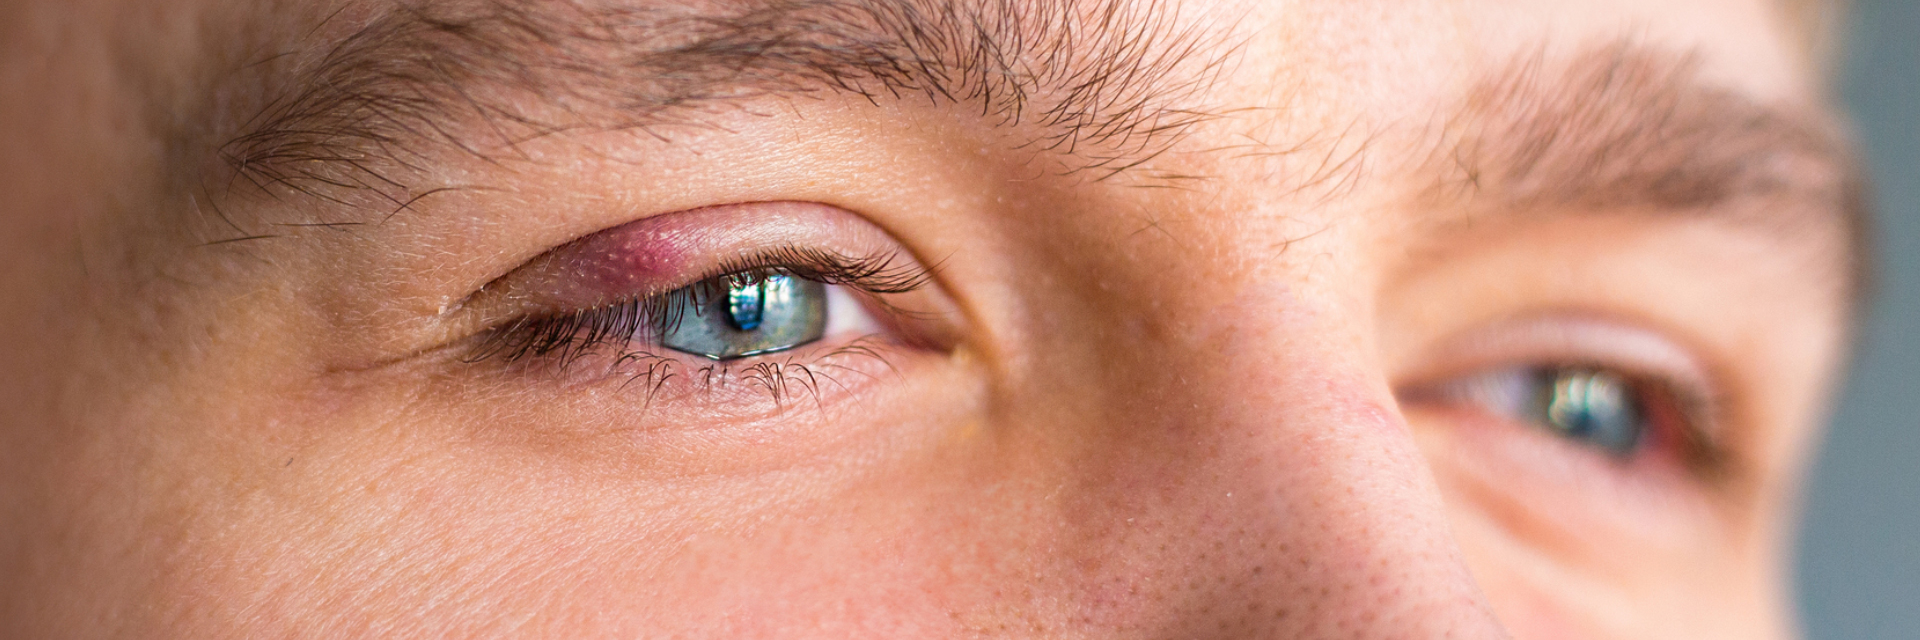 Øjenlågsbetændelse (blepharitis)